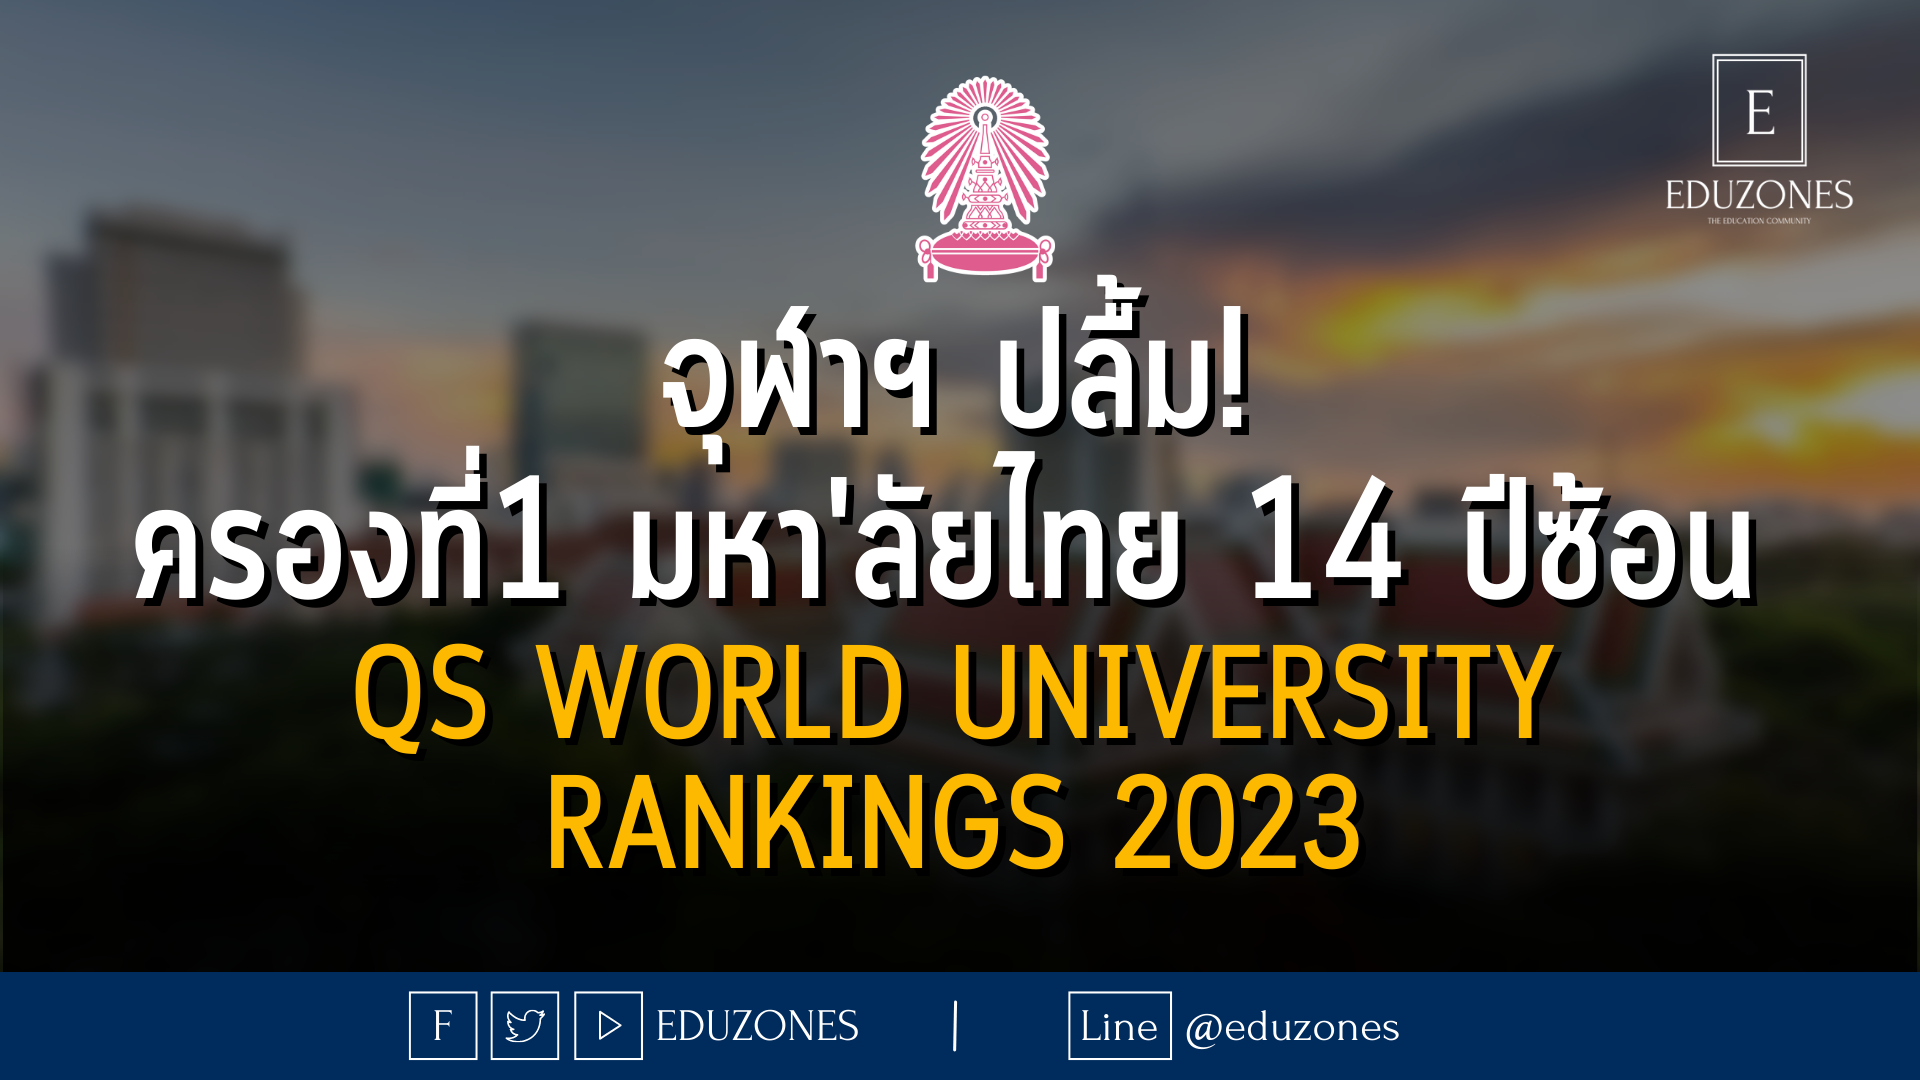 จุฬาฯ ปลื้ม! ครองอันดับ 1 มหาวิทยาลัยไทย 14 ปีซ้อน จาก QS World University Rankings 2023